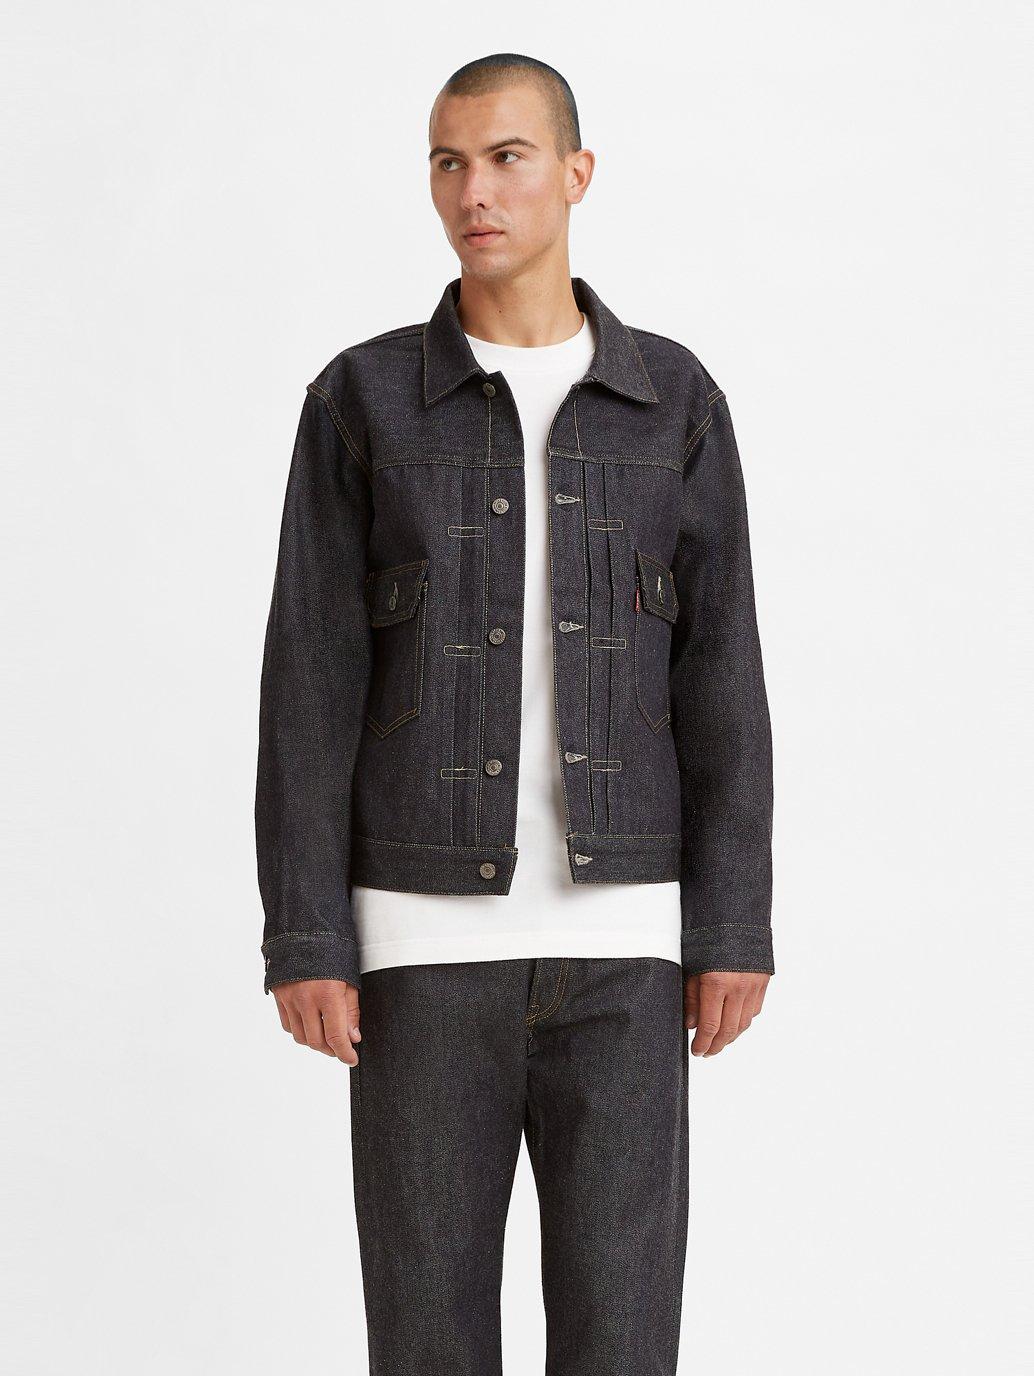 Levi’s Vintage Clothing 1936 Type I Denim Jacket